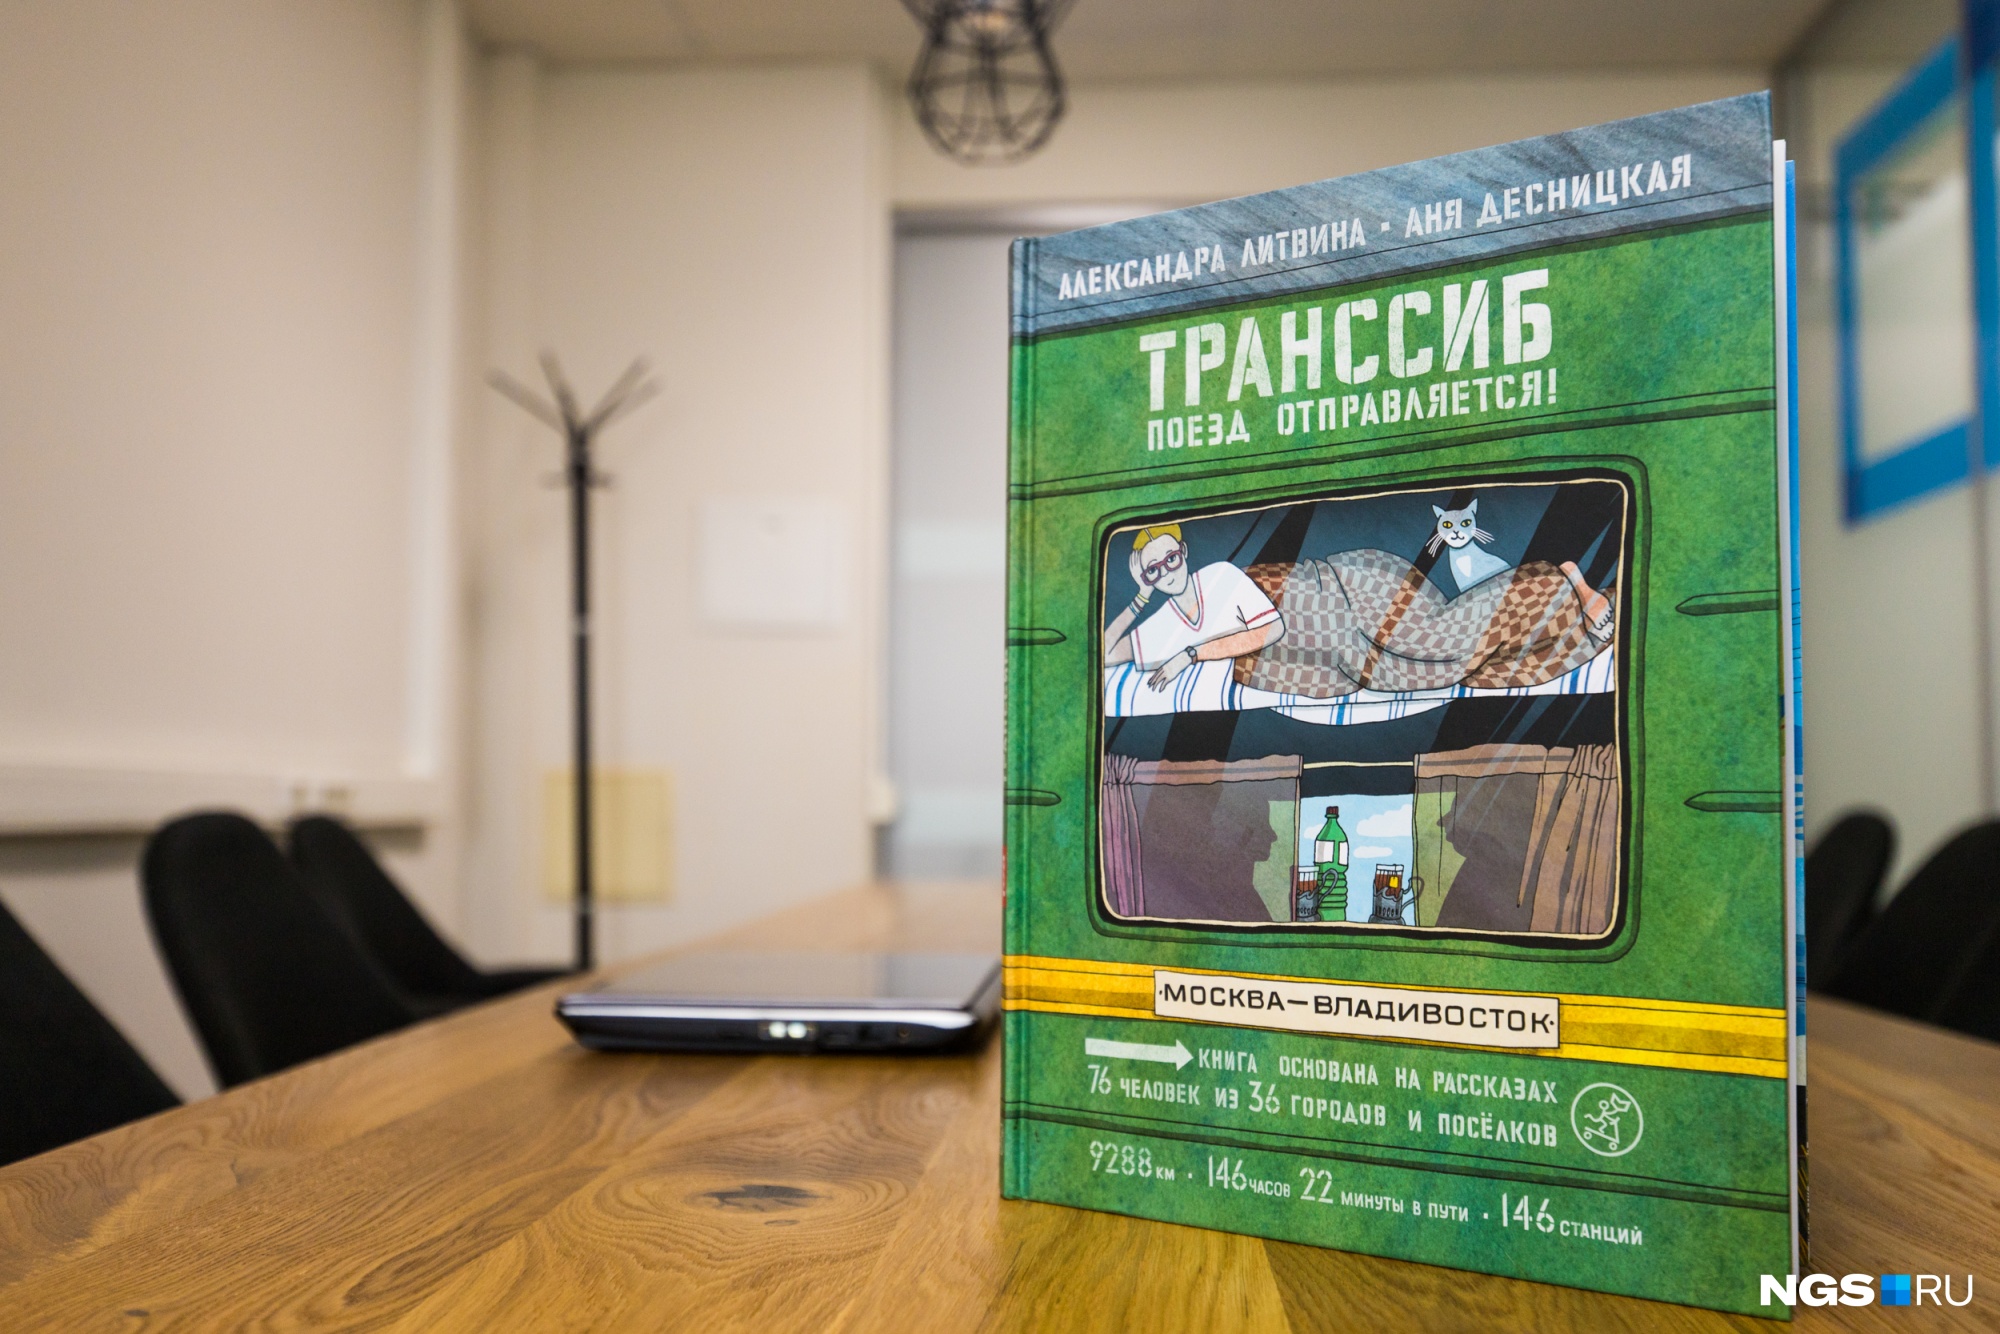 9-летняя девочка из Новосибирска помогла написать книгу про Транссиб — издание ждут в Германии и США